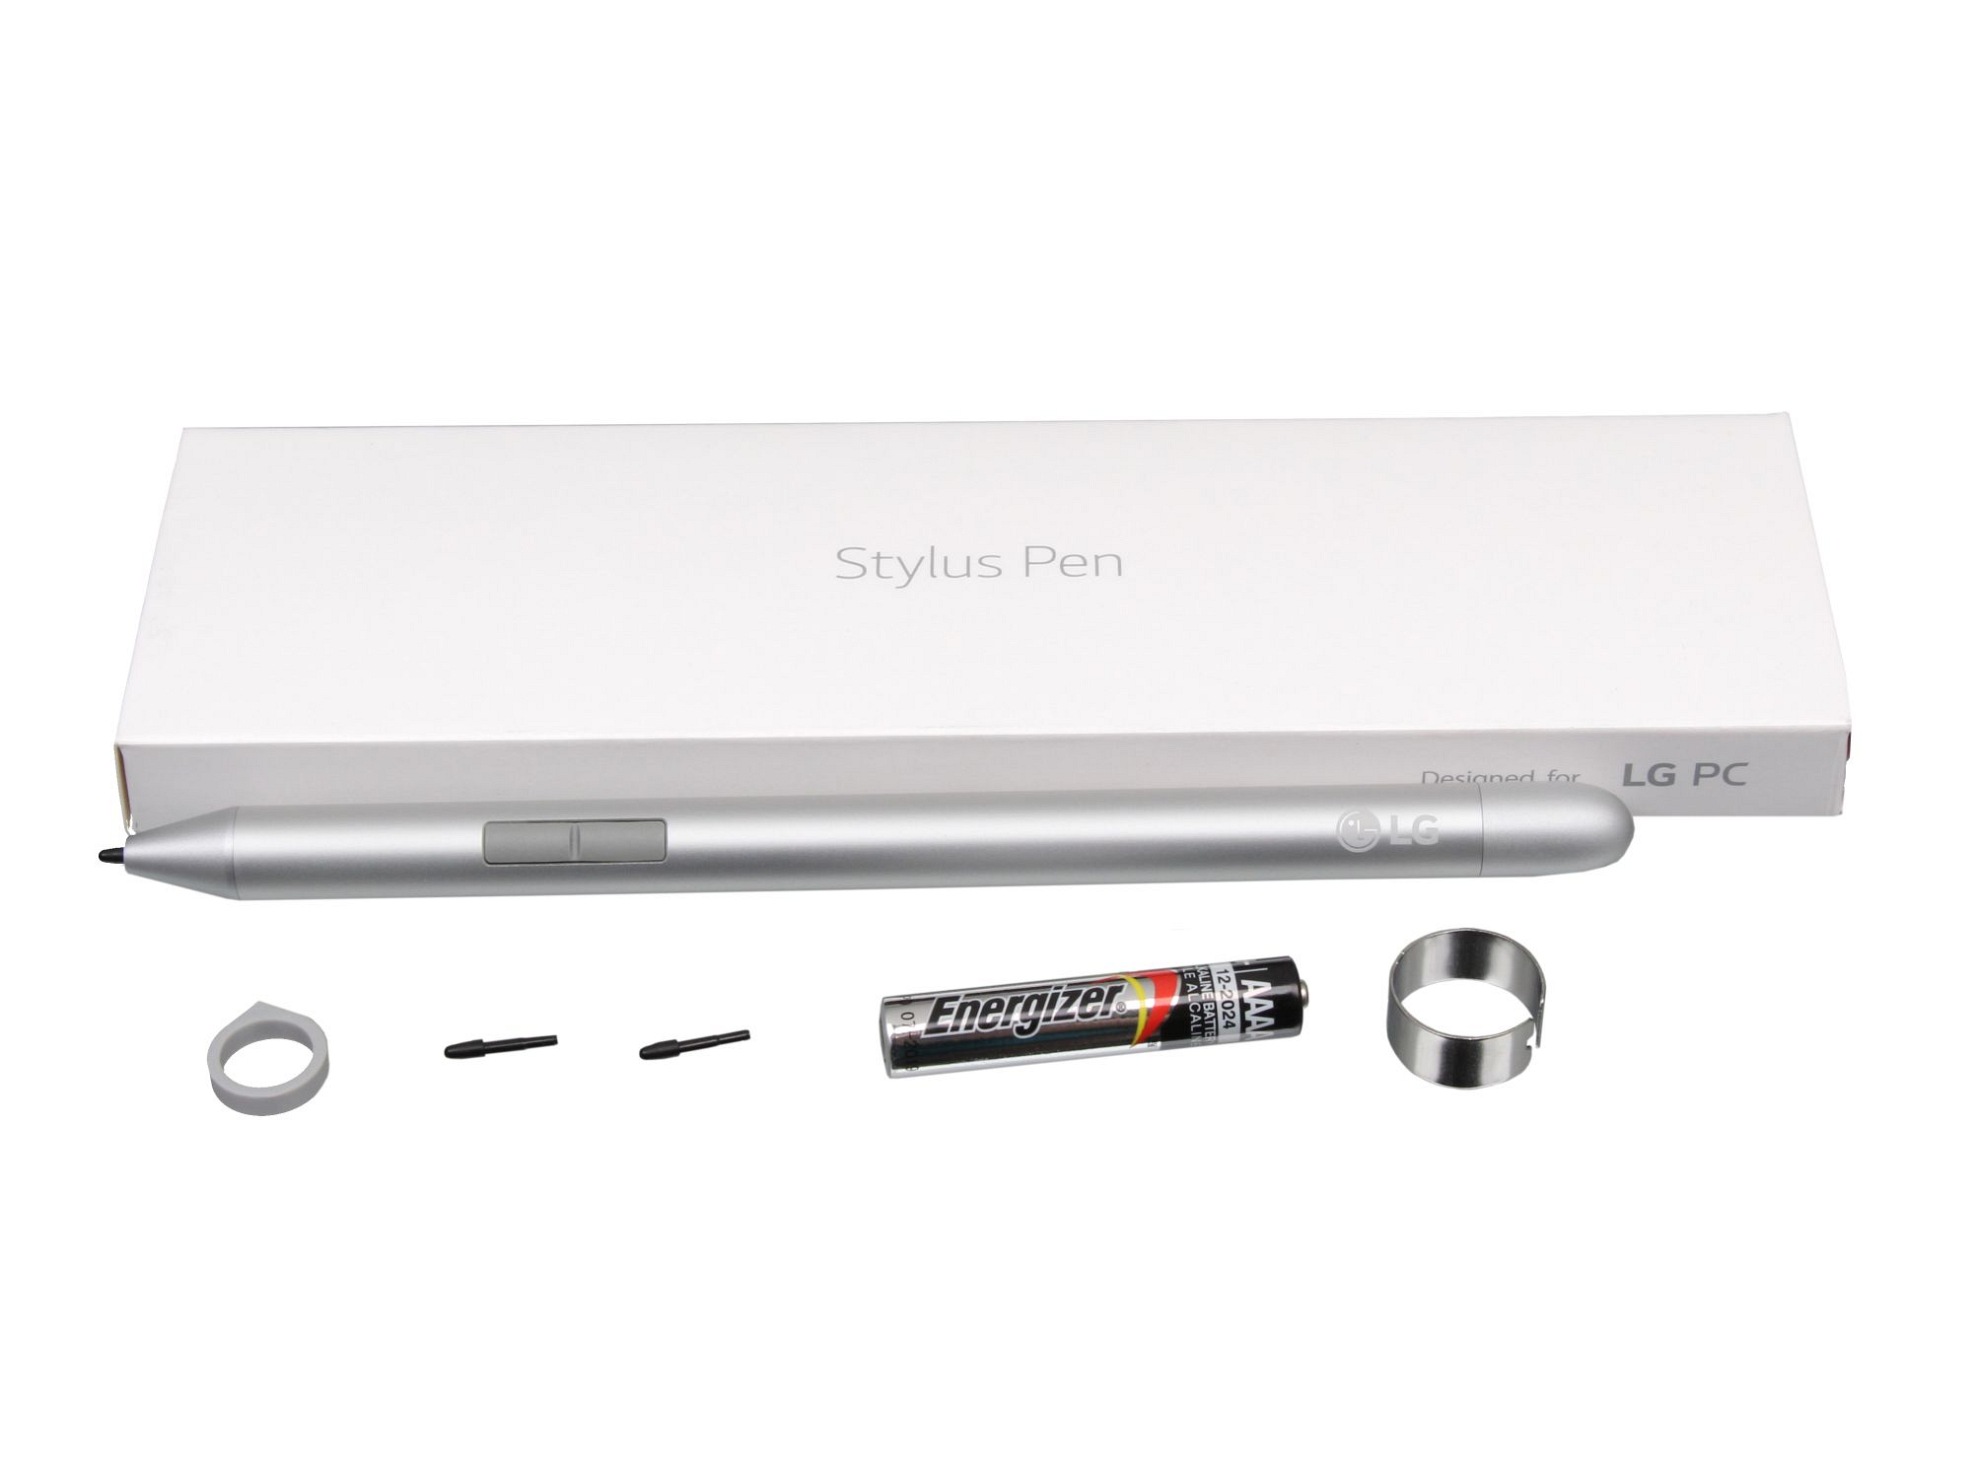 LG ESP-201-06A-5 Stylus Pen inkl. Batterie